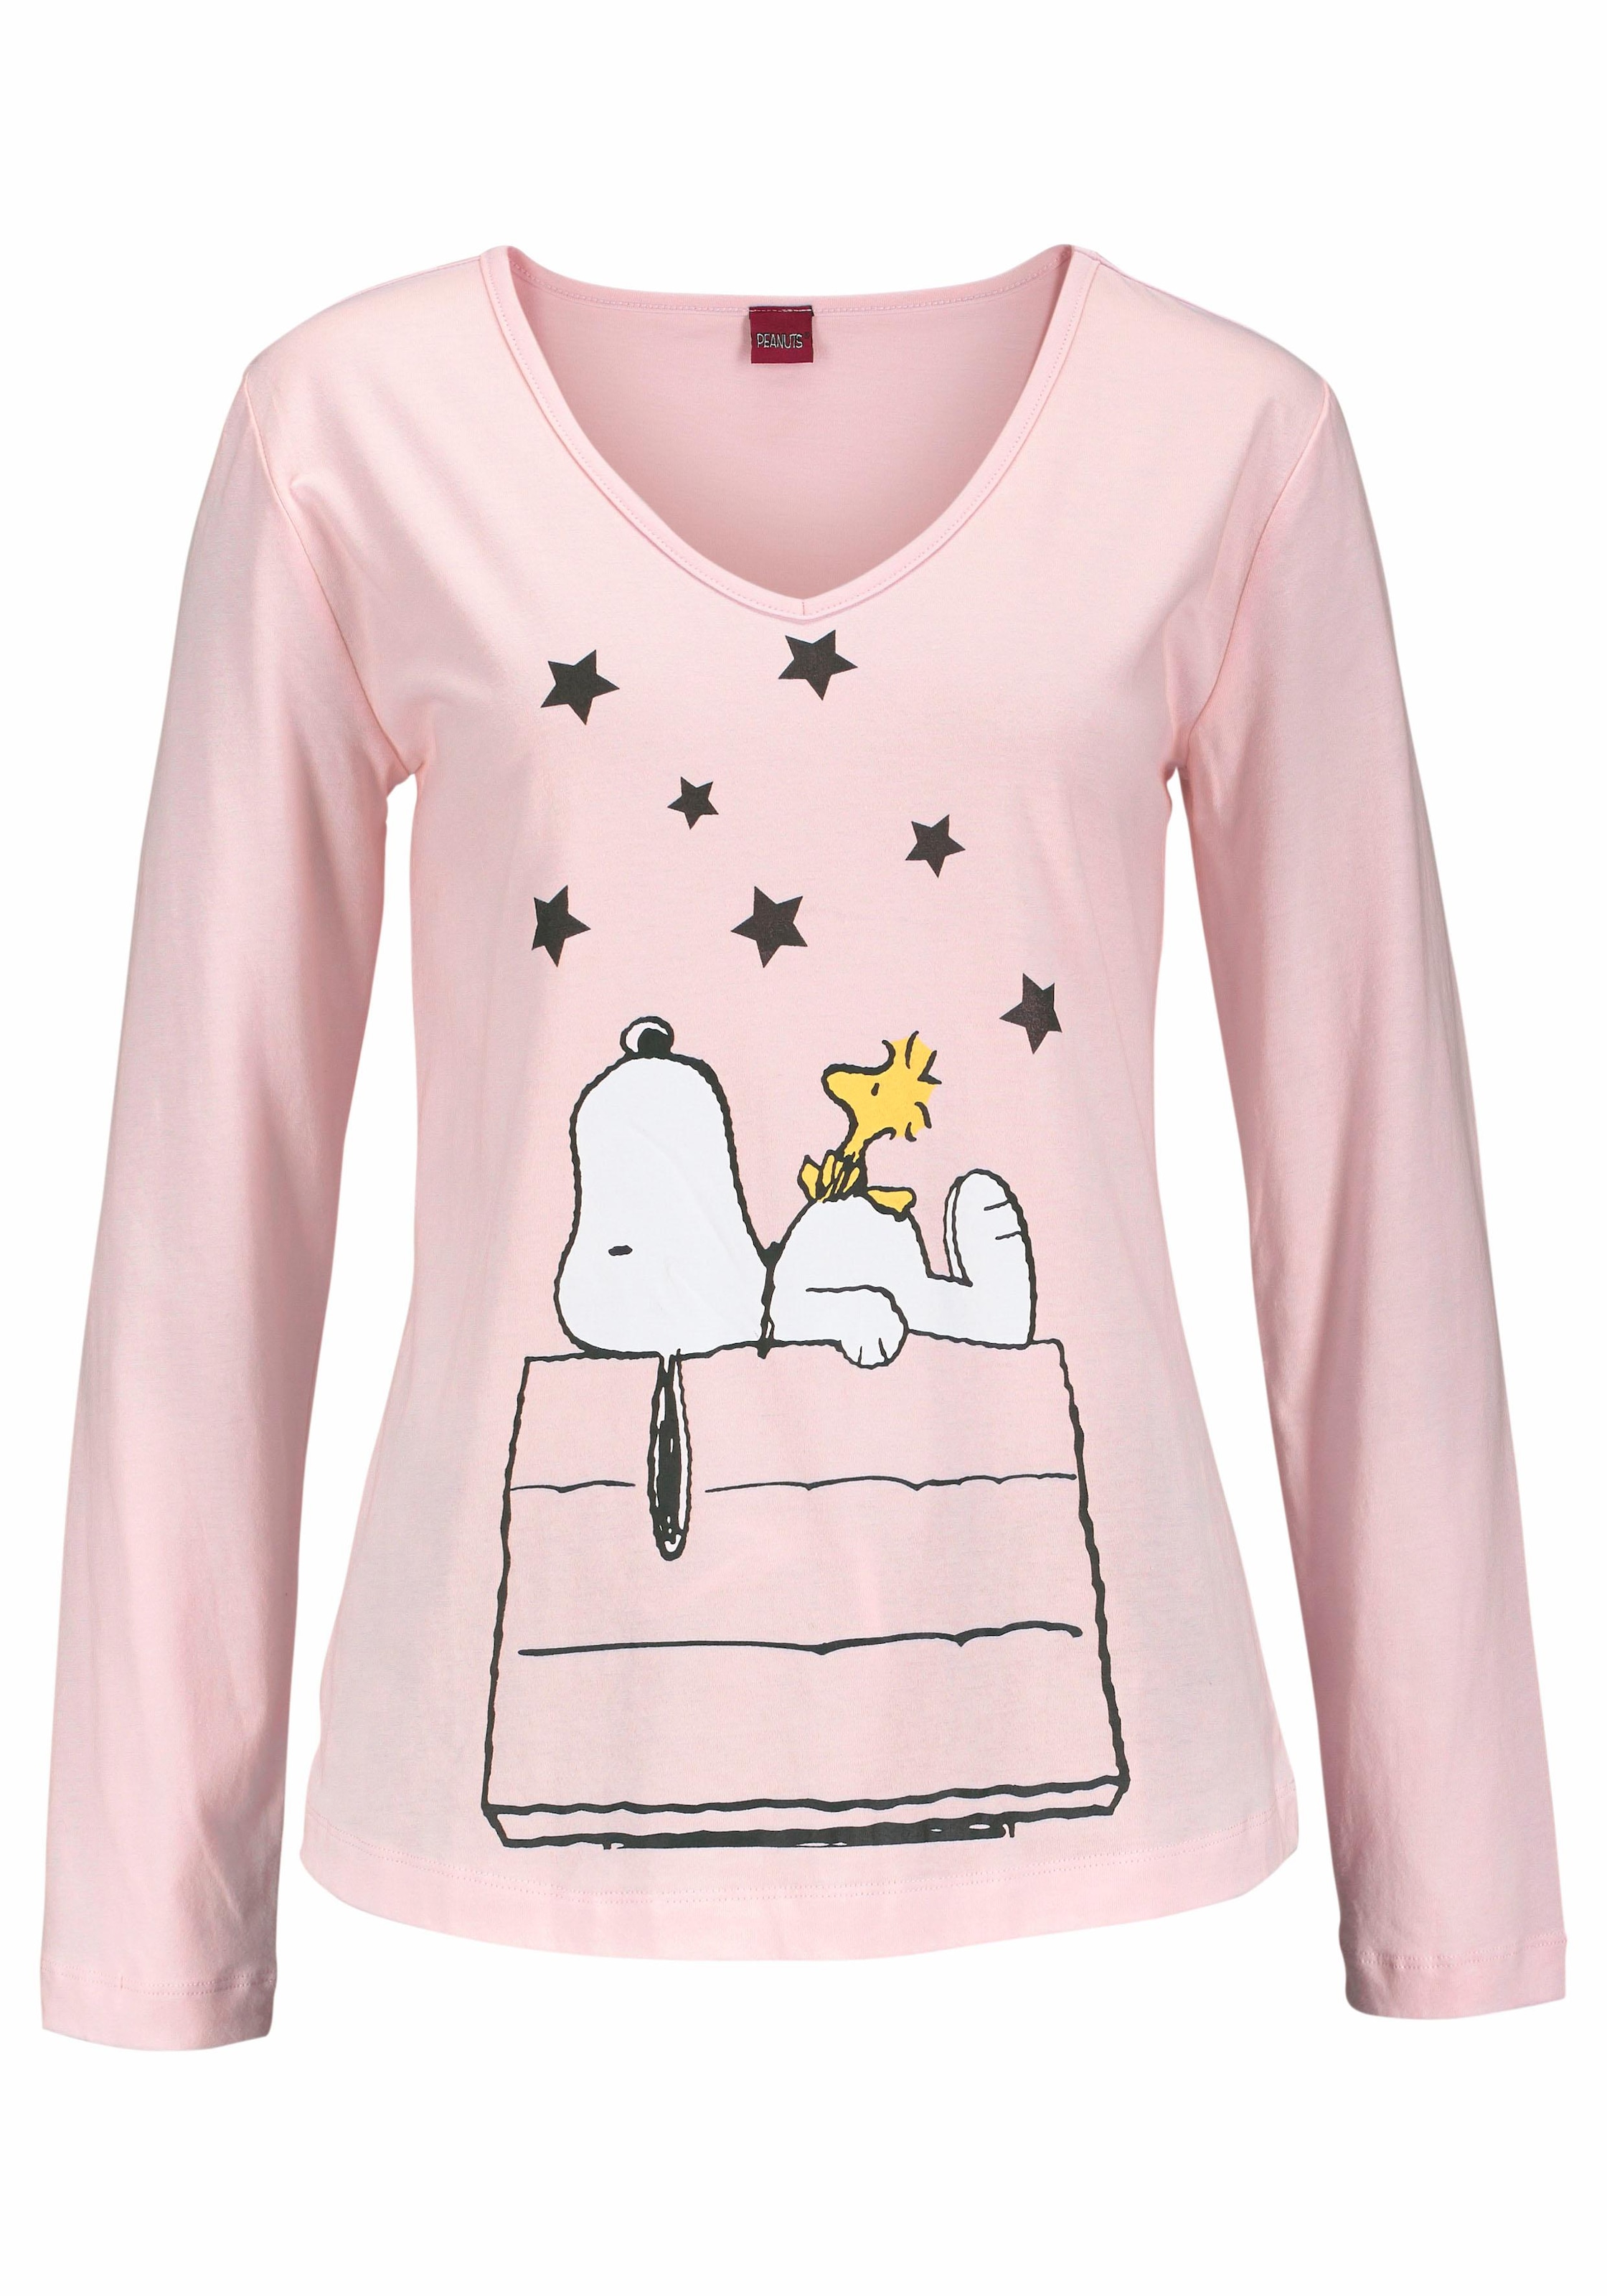 Peanuts niedlichen im Pyjama, OTTOversand in Snoopy-Design tlg., bei (2 langer 1 Stück), Form